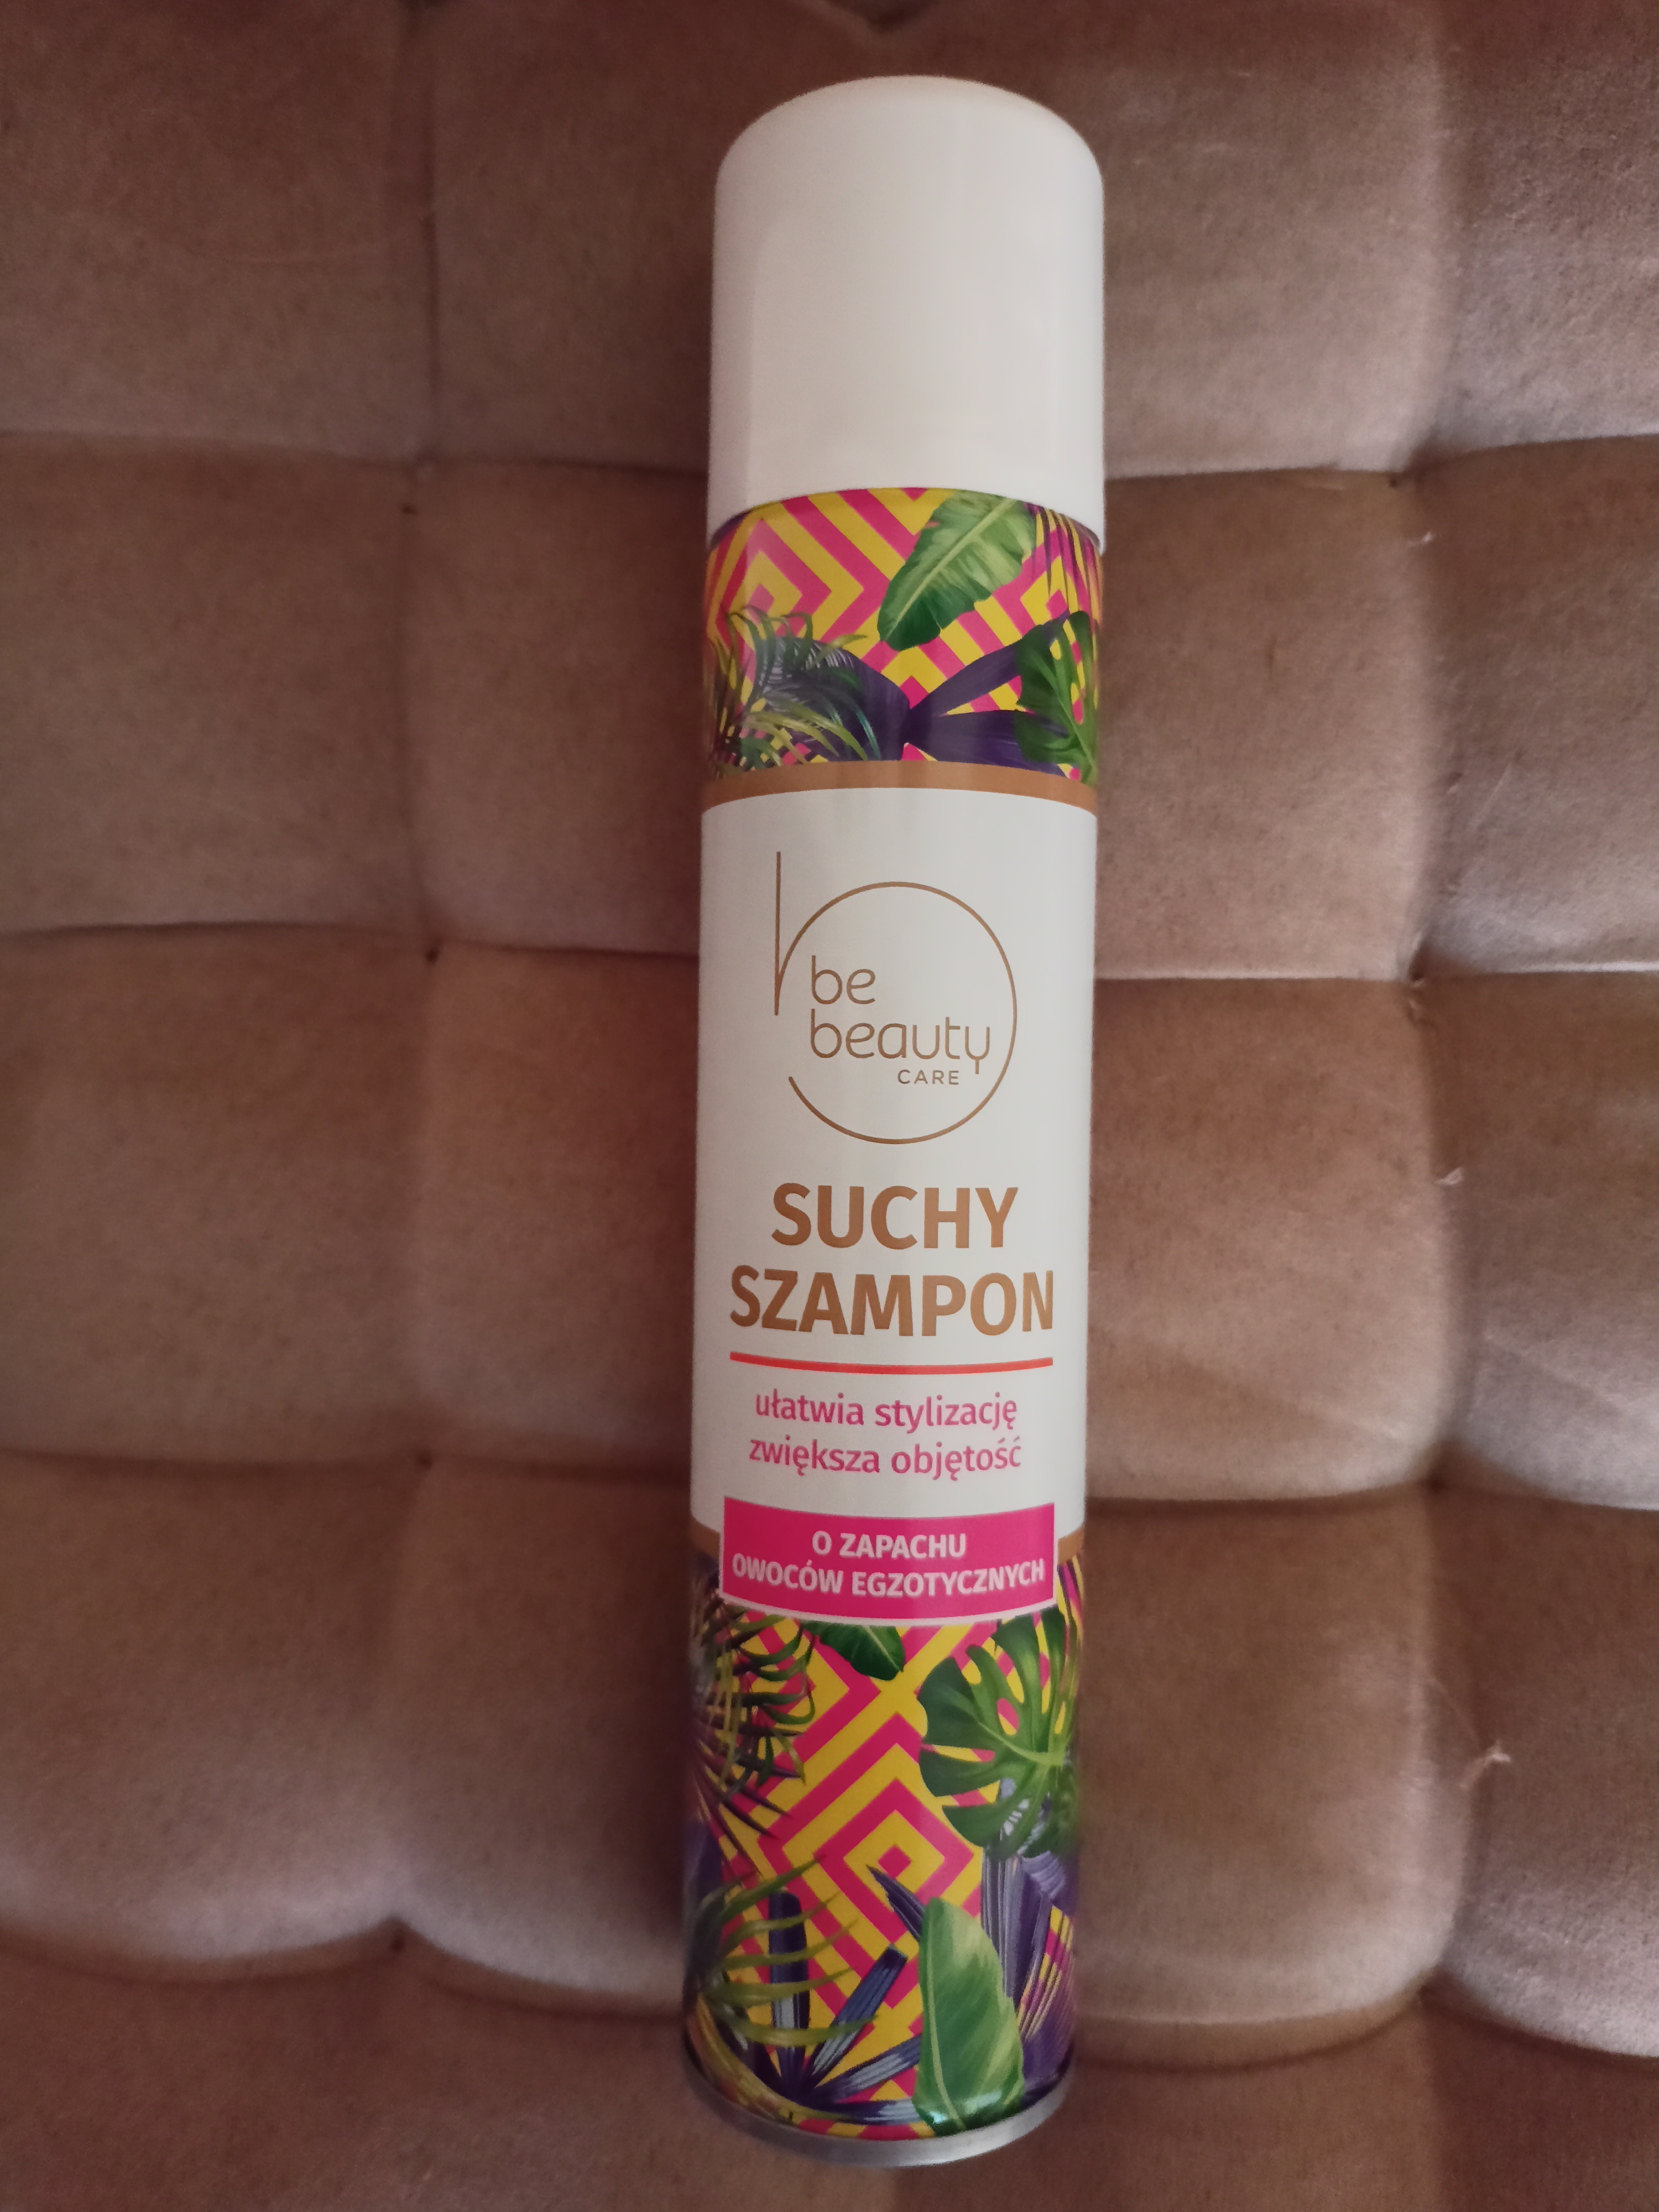 be beauty suchy szampon wizaz